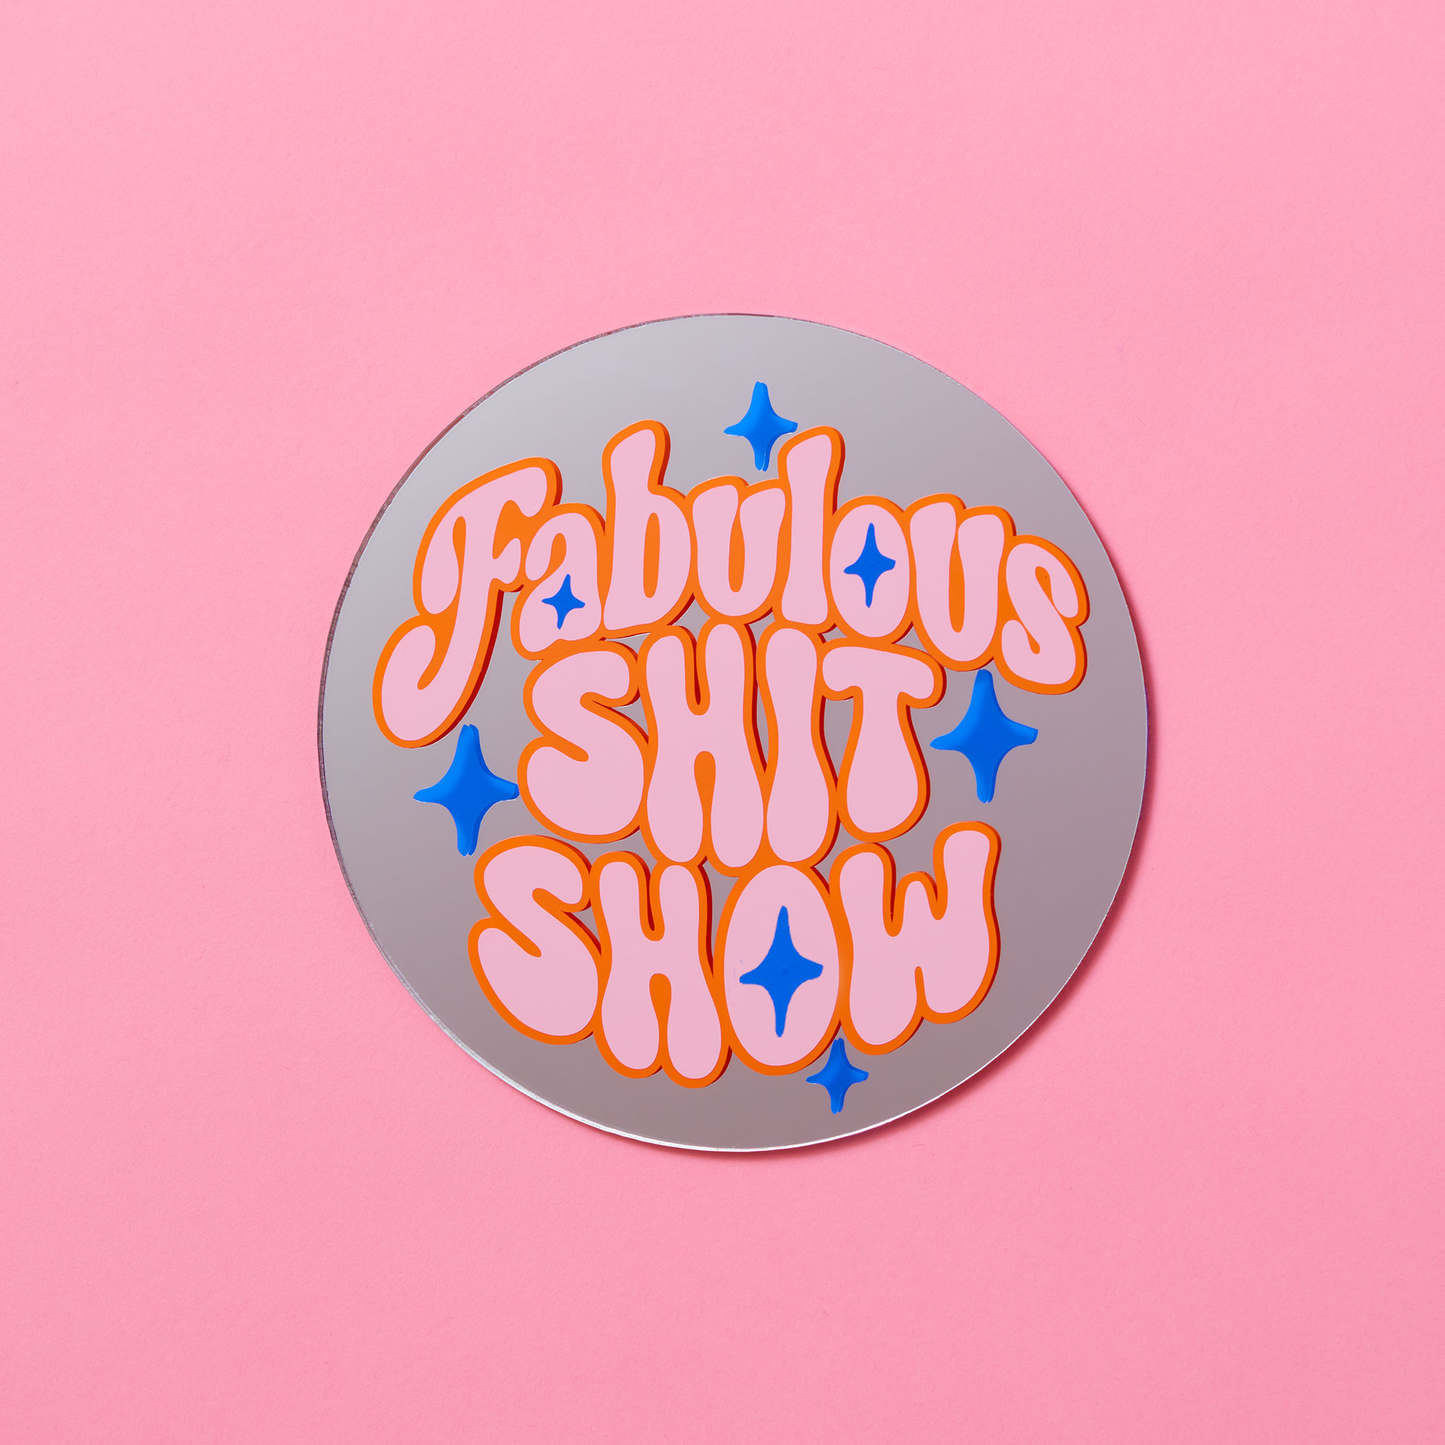 Fabulous Shit Show Disc Mirror